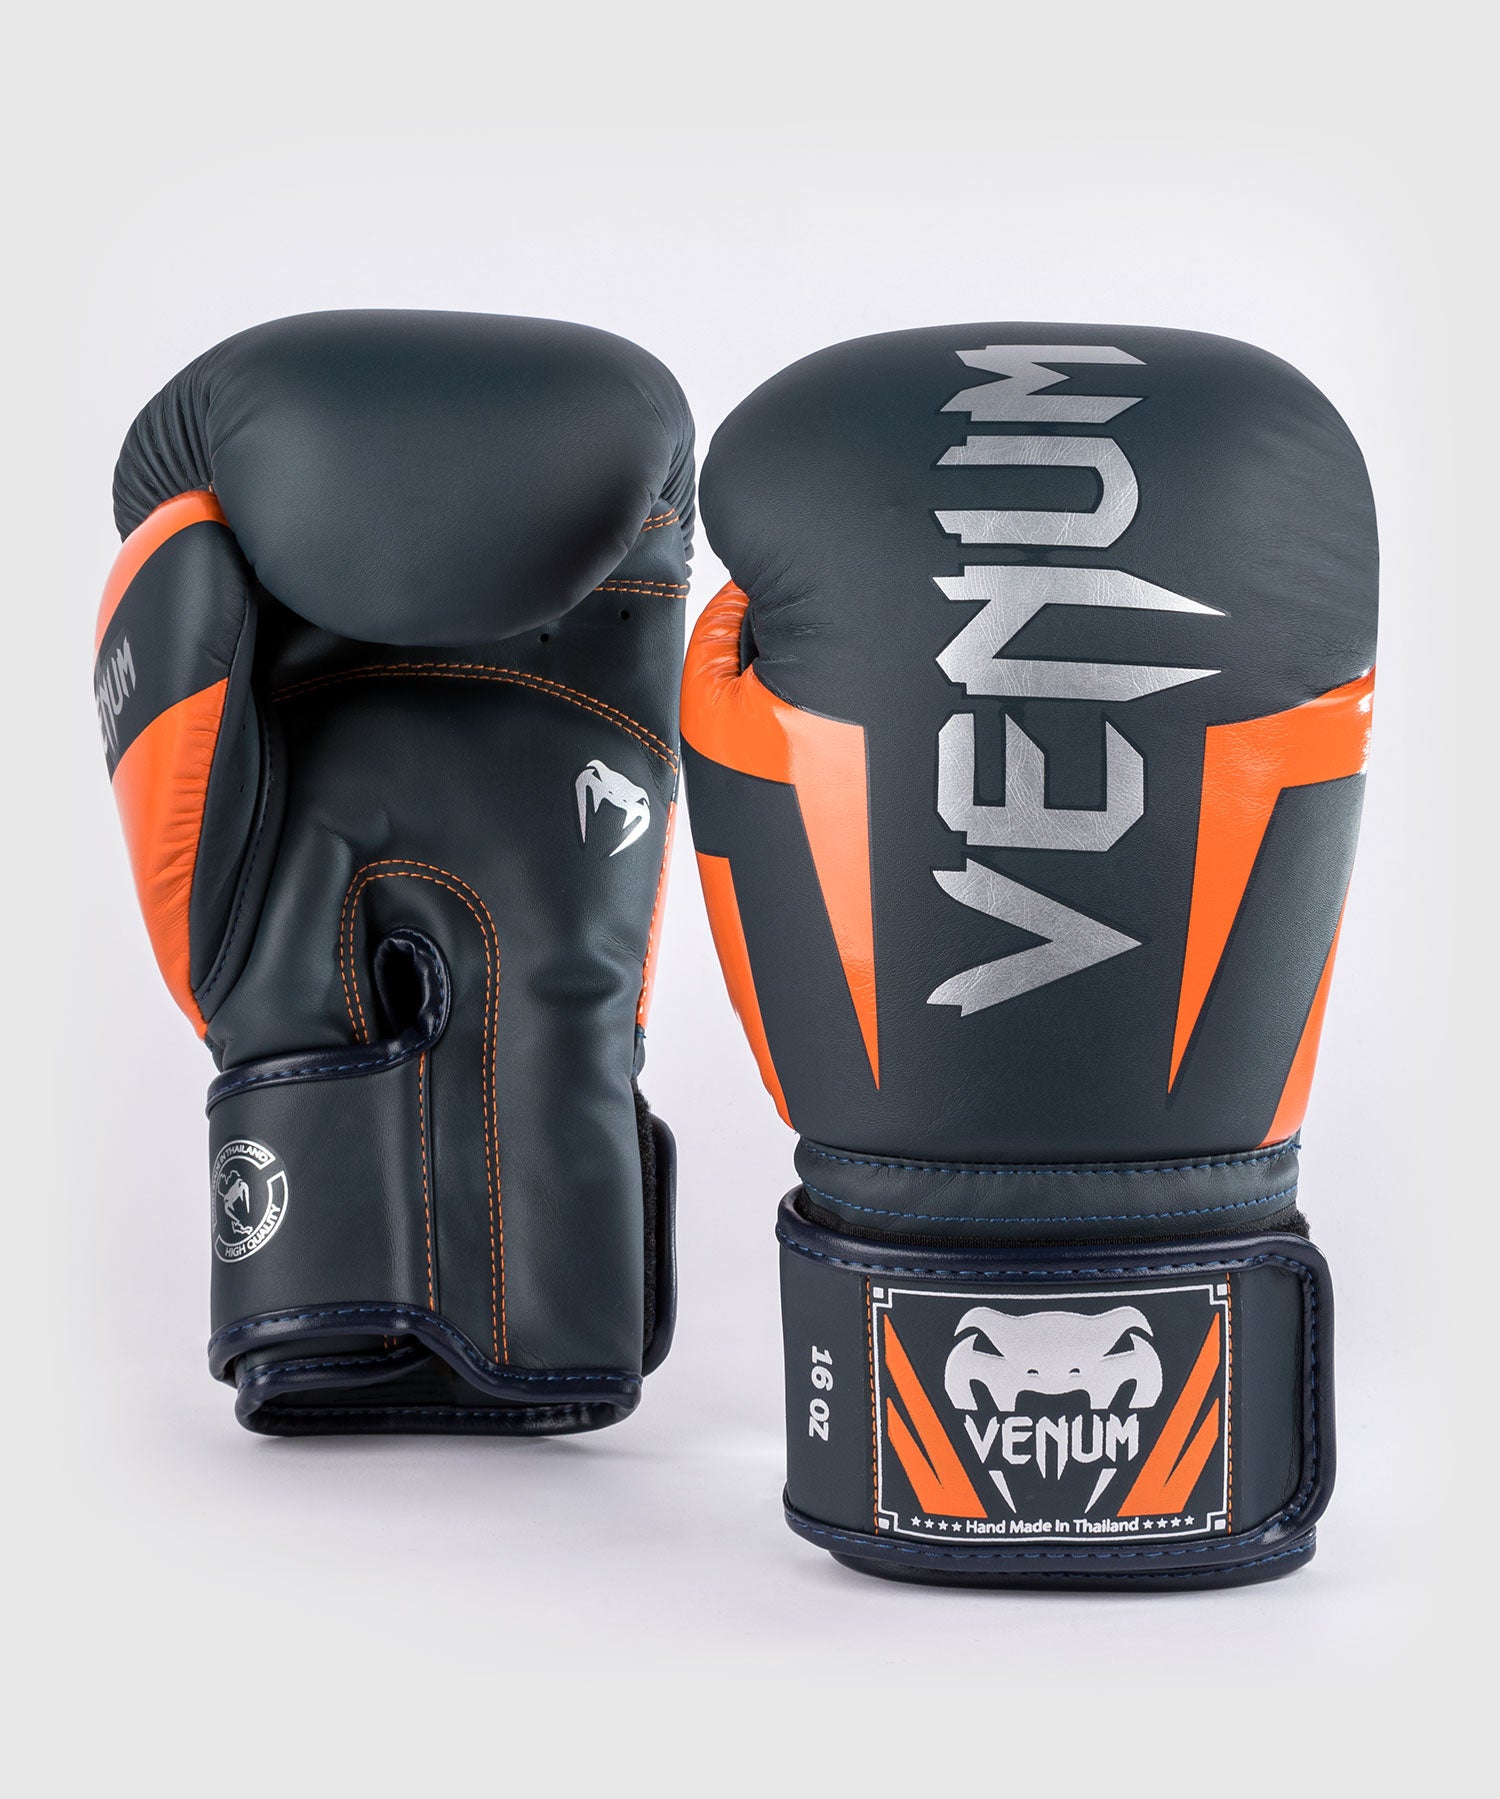 Gants de boxe femme Booster Fight Gear Pro 4 - Gants de Boxe d'entrainement  - Gants & Protections - Sports de combat